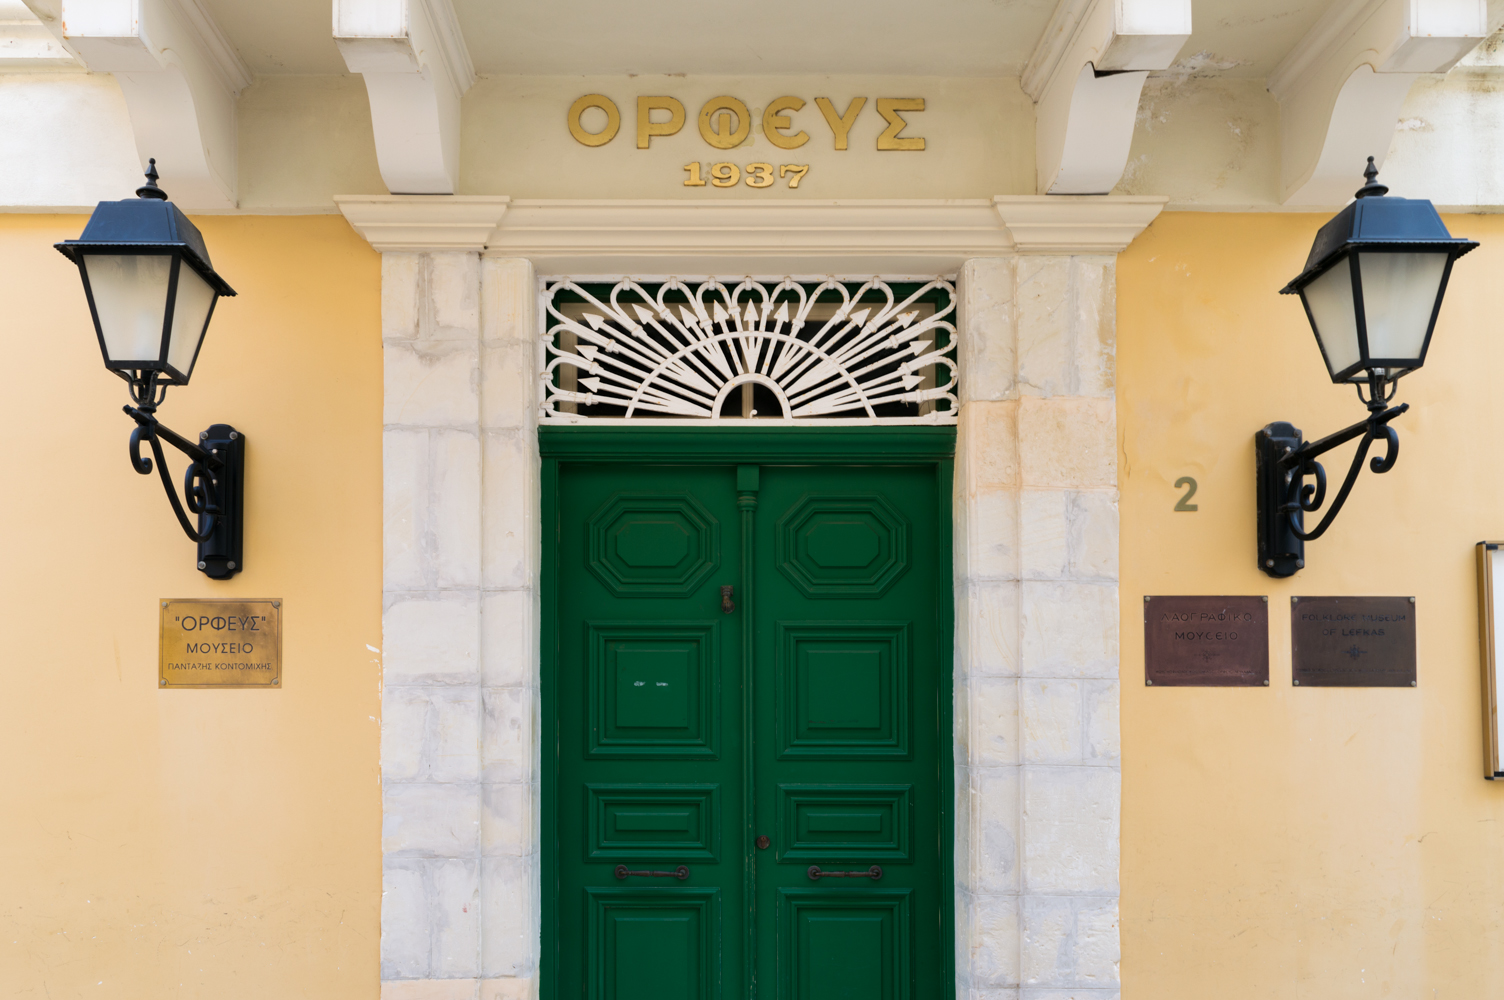 Λαογραφικό Μουσείο Ορφέα στη Λευκάδα | Αναπαλαιωμένο κτίριο του 1850